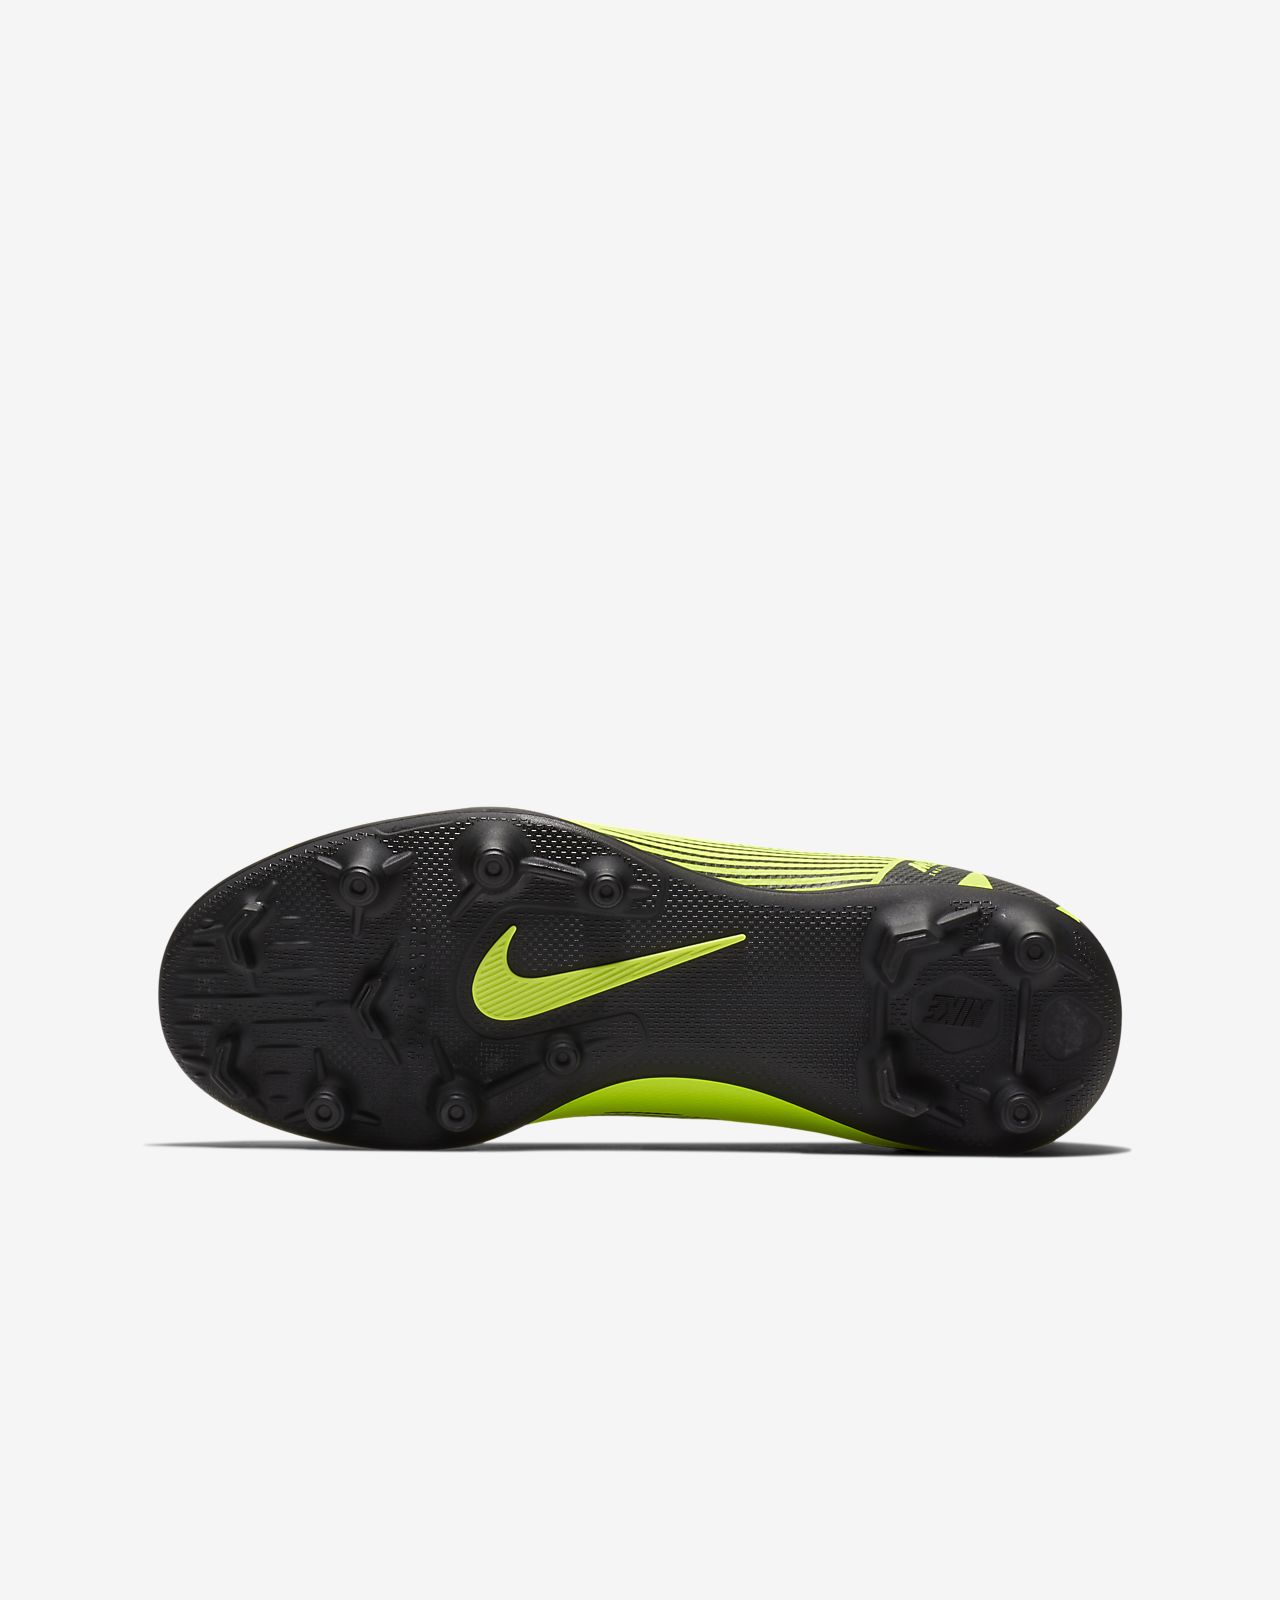 Nike Mercurial Superfly VII Club FG MG Black football boots.